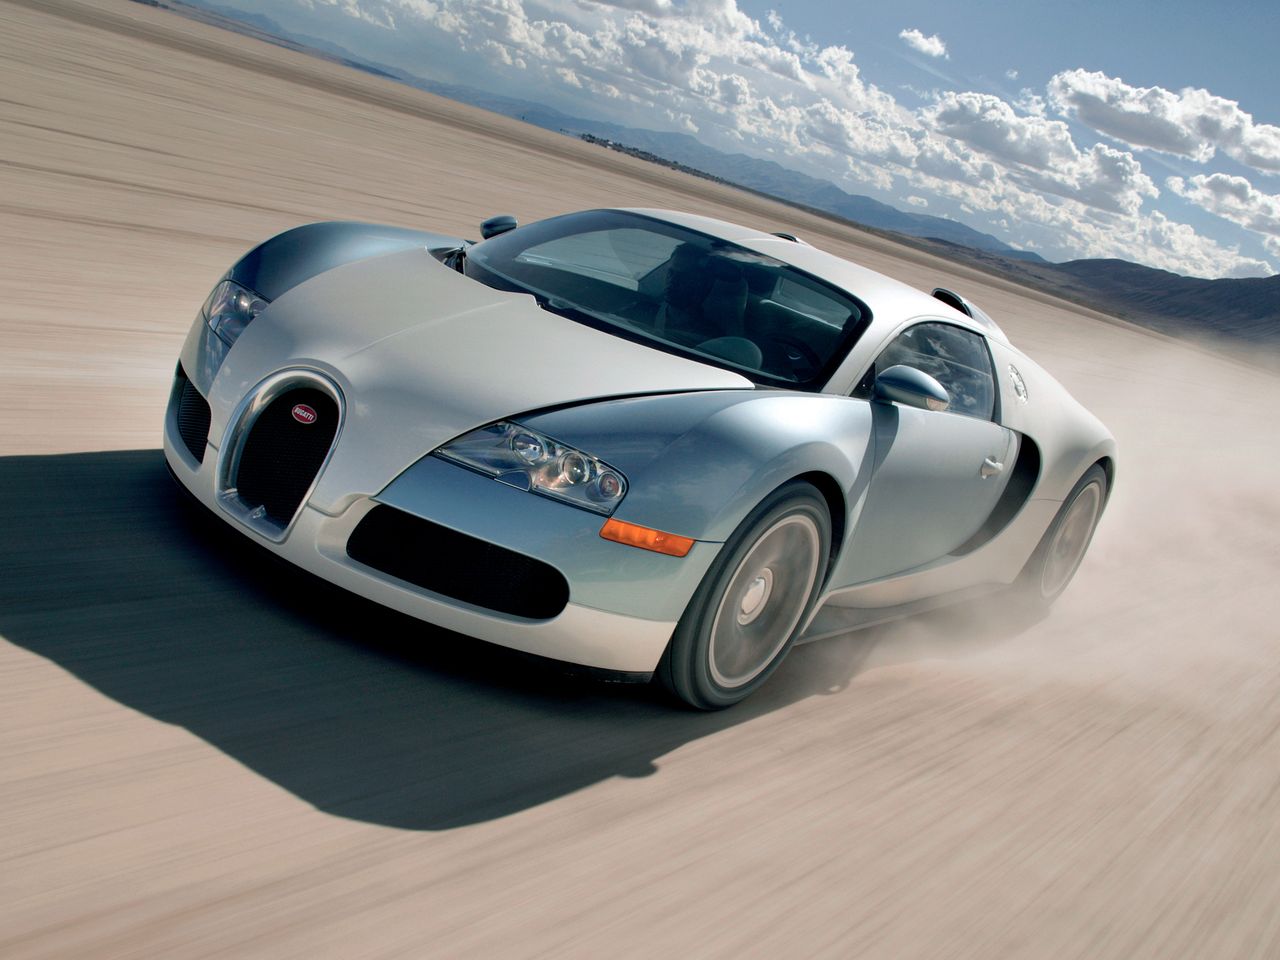 Bugatti Veyron był pierwszym samochodem produkowanym seryjnie, który przekroczył barierę 400 km/h.